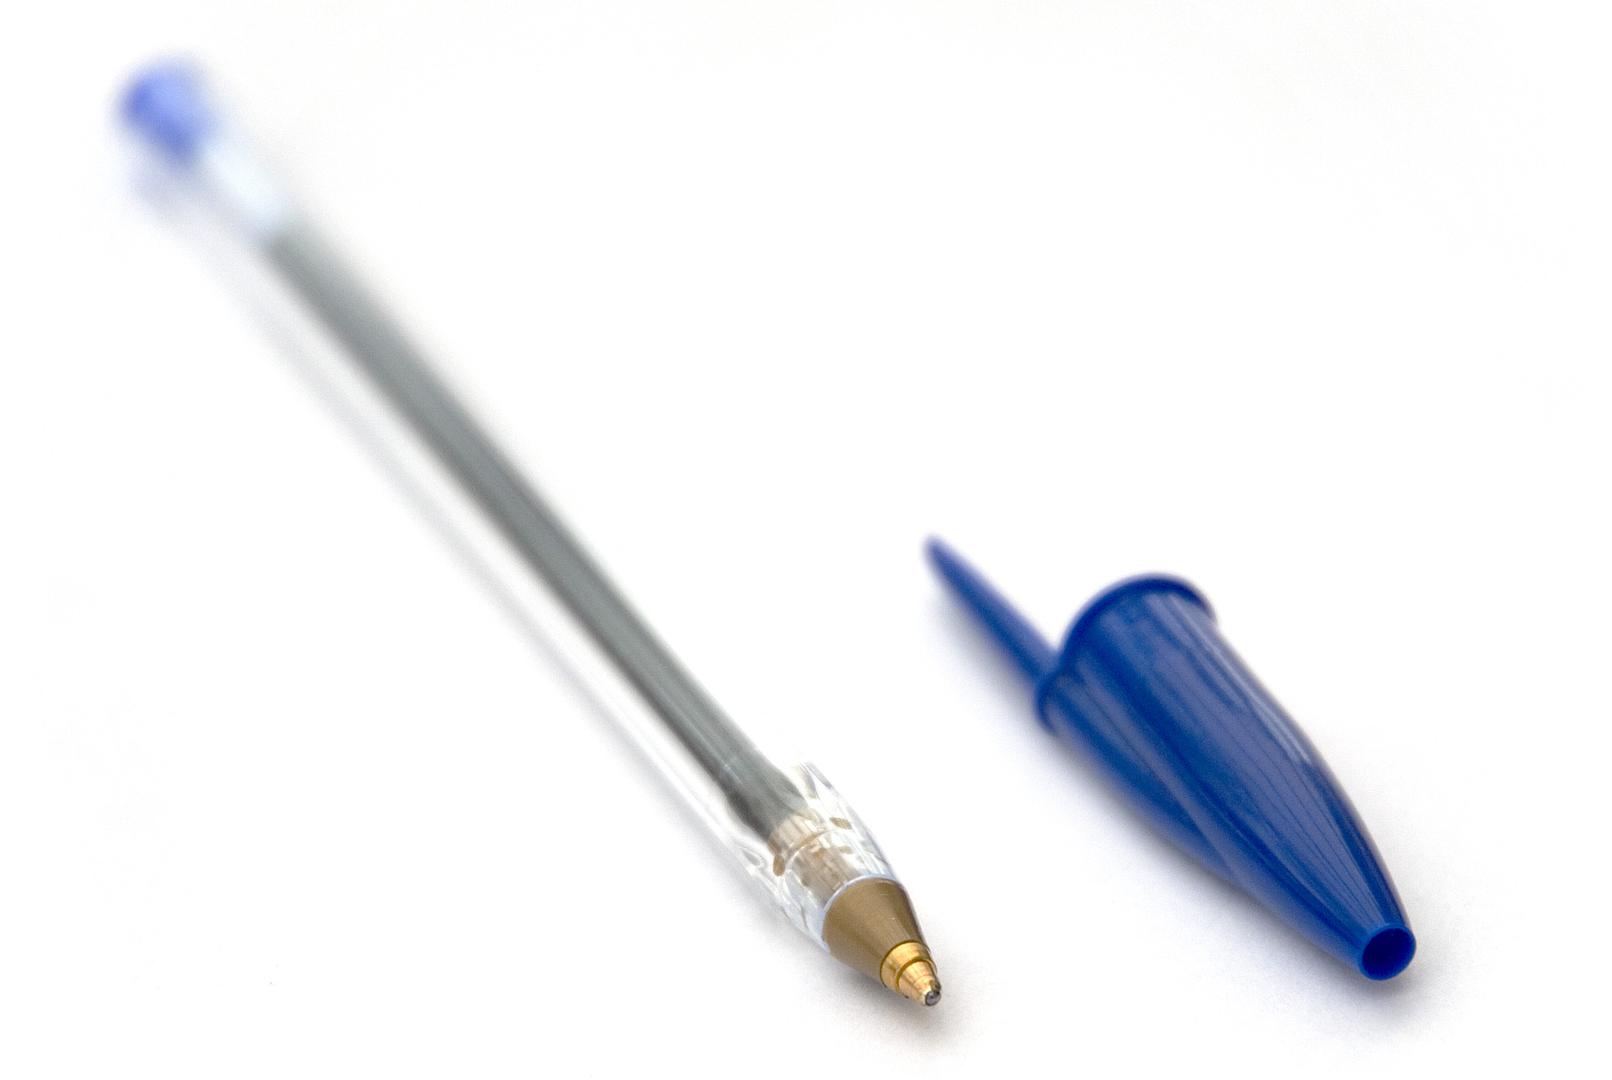 Rupa na čepu kemijske olovke sprečava gušenje u slučaju gutanja.